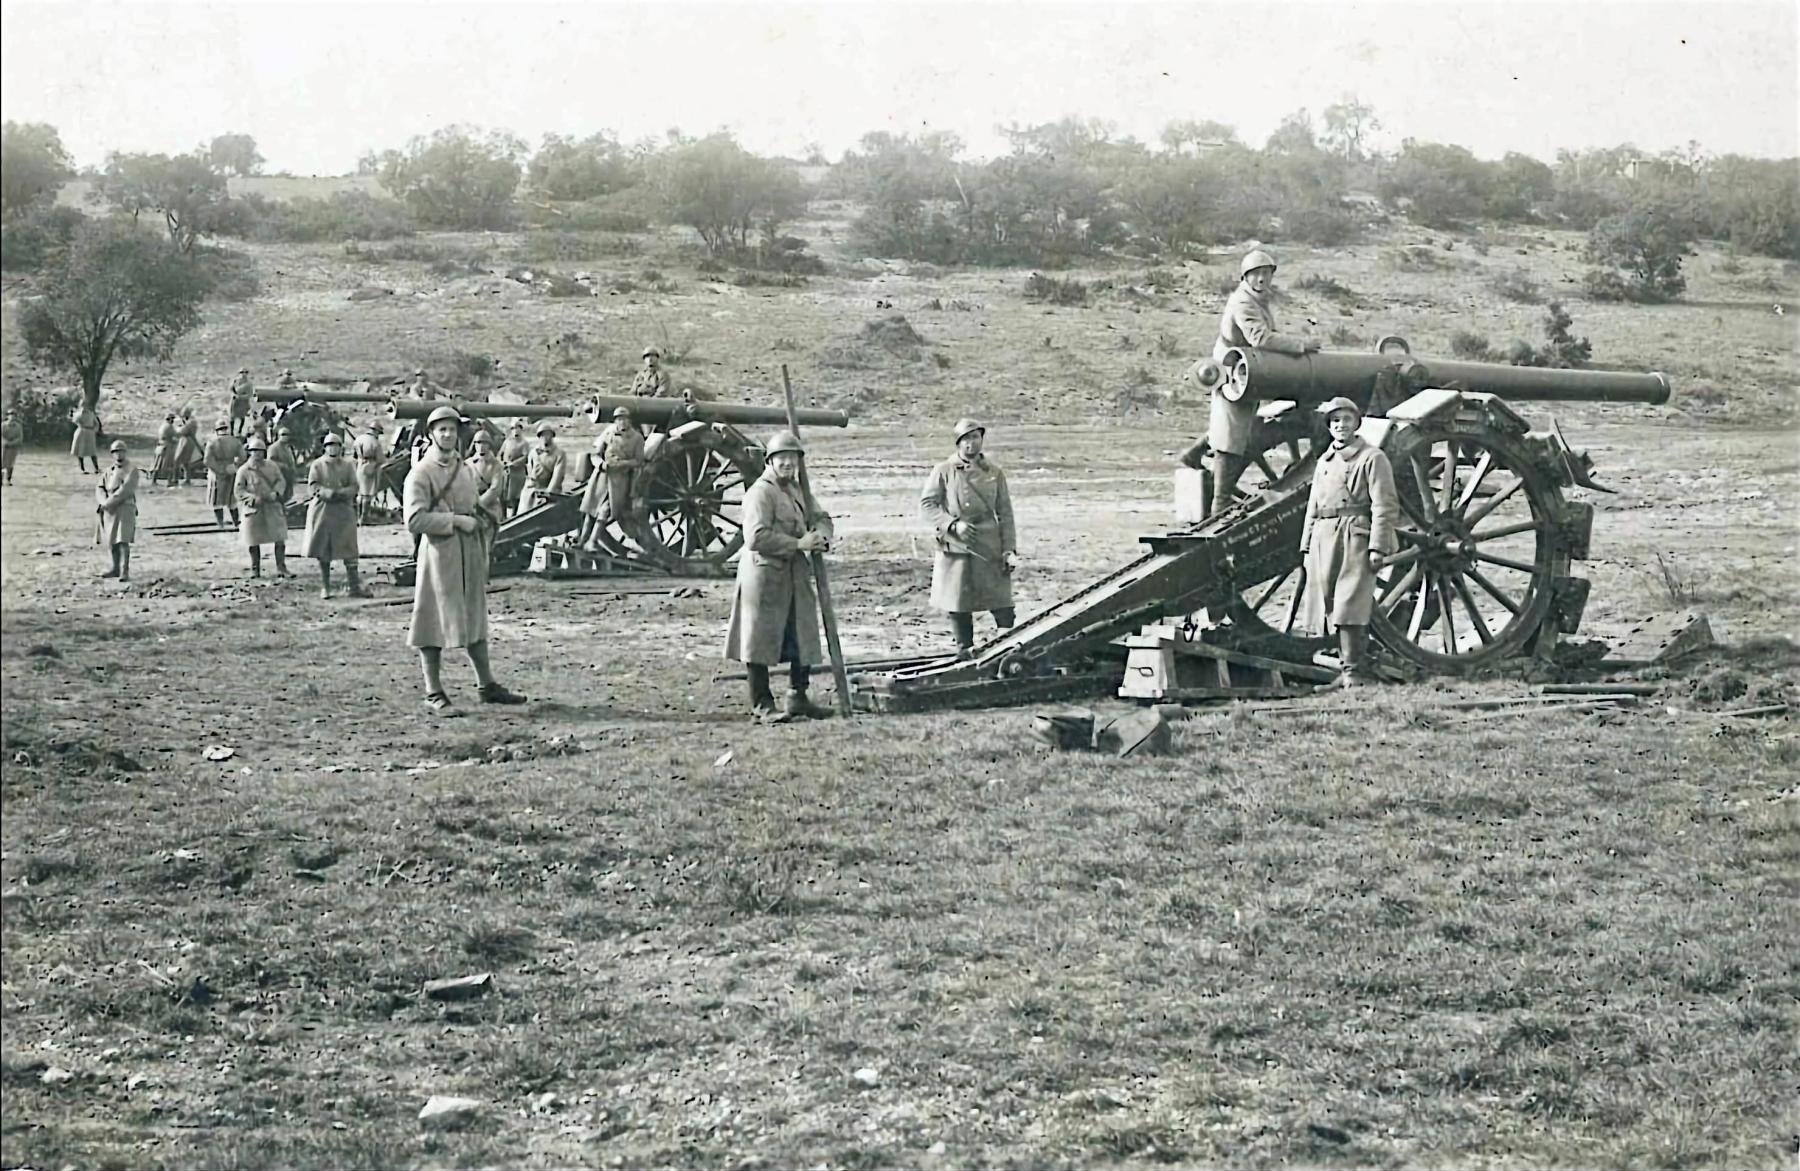 Ligne Maginot - Canon de 120 mm L Modèle 1878 De Bange - canon de 120 mm L modèle 1877 De Bange
Musée de l'artillerie de Draguigna